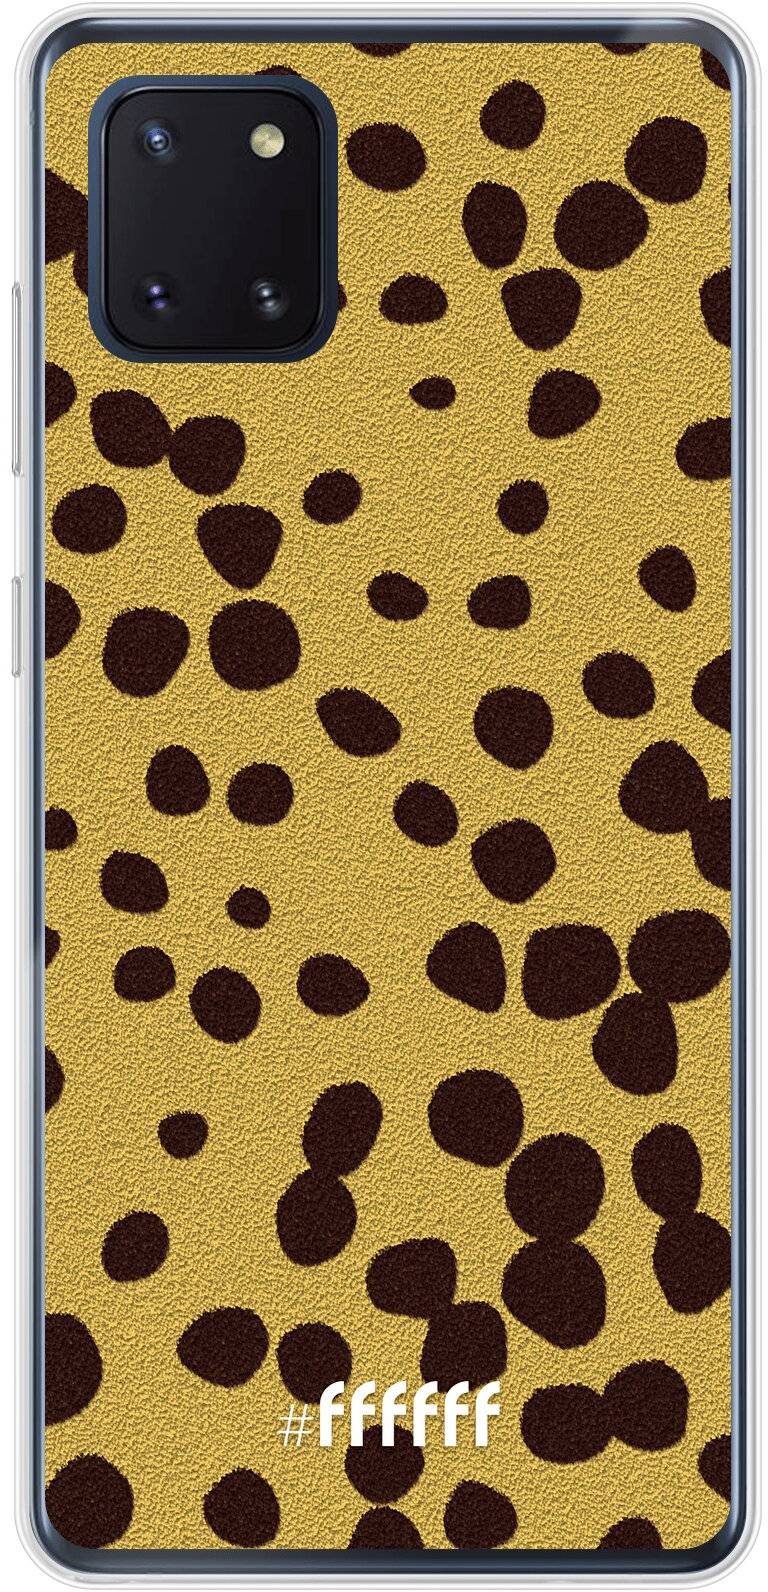 Cheetah Print Galaxy Note 10 Lite